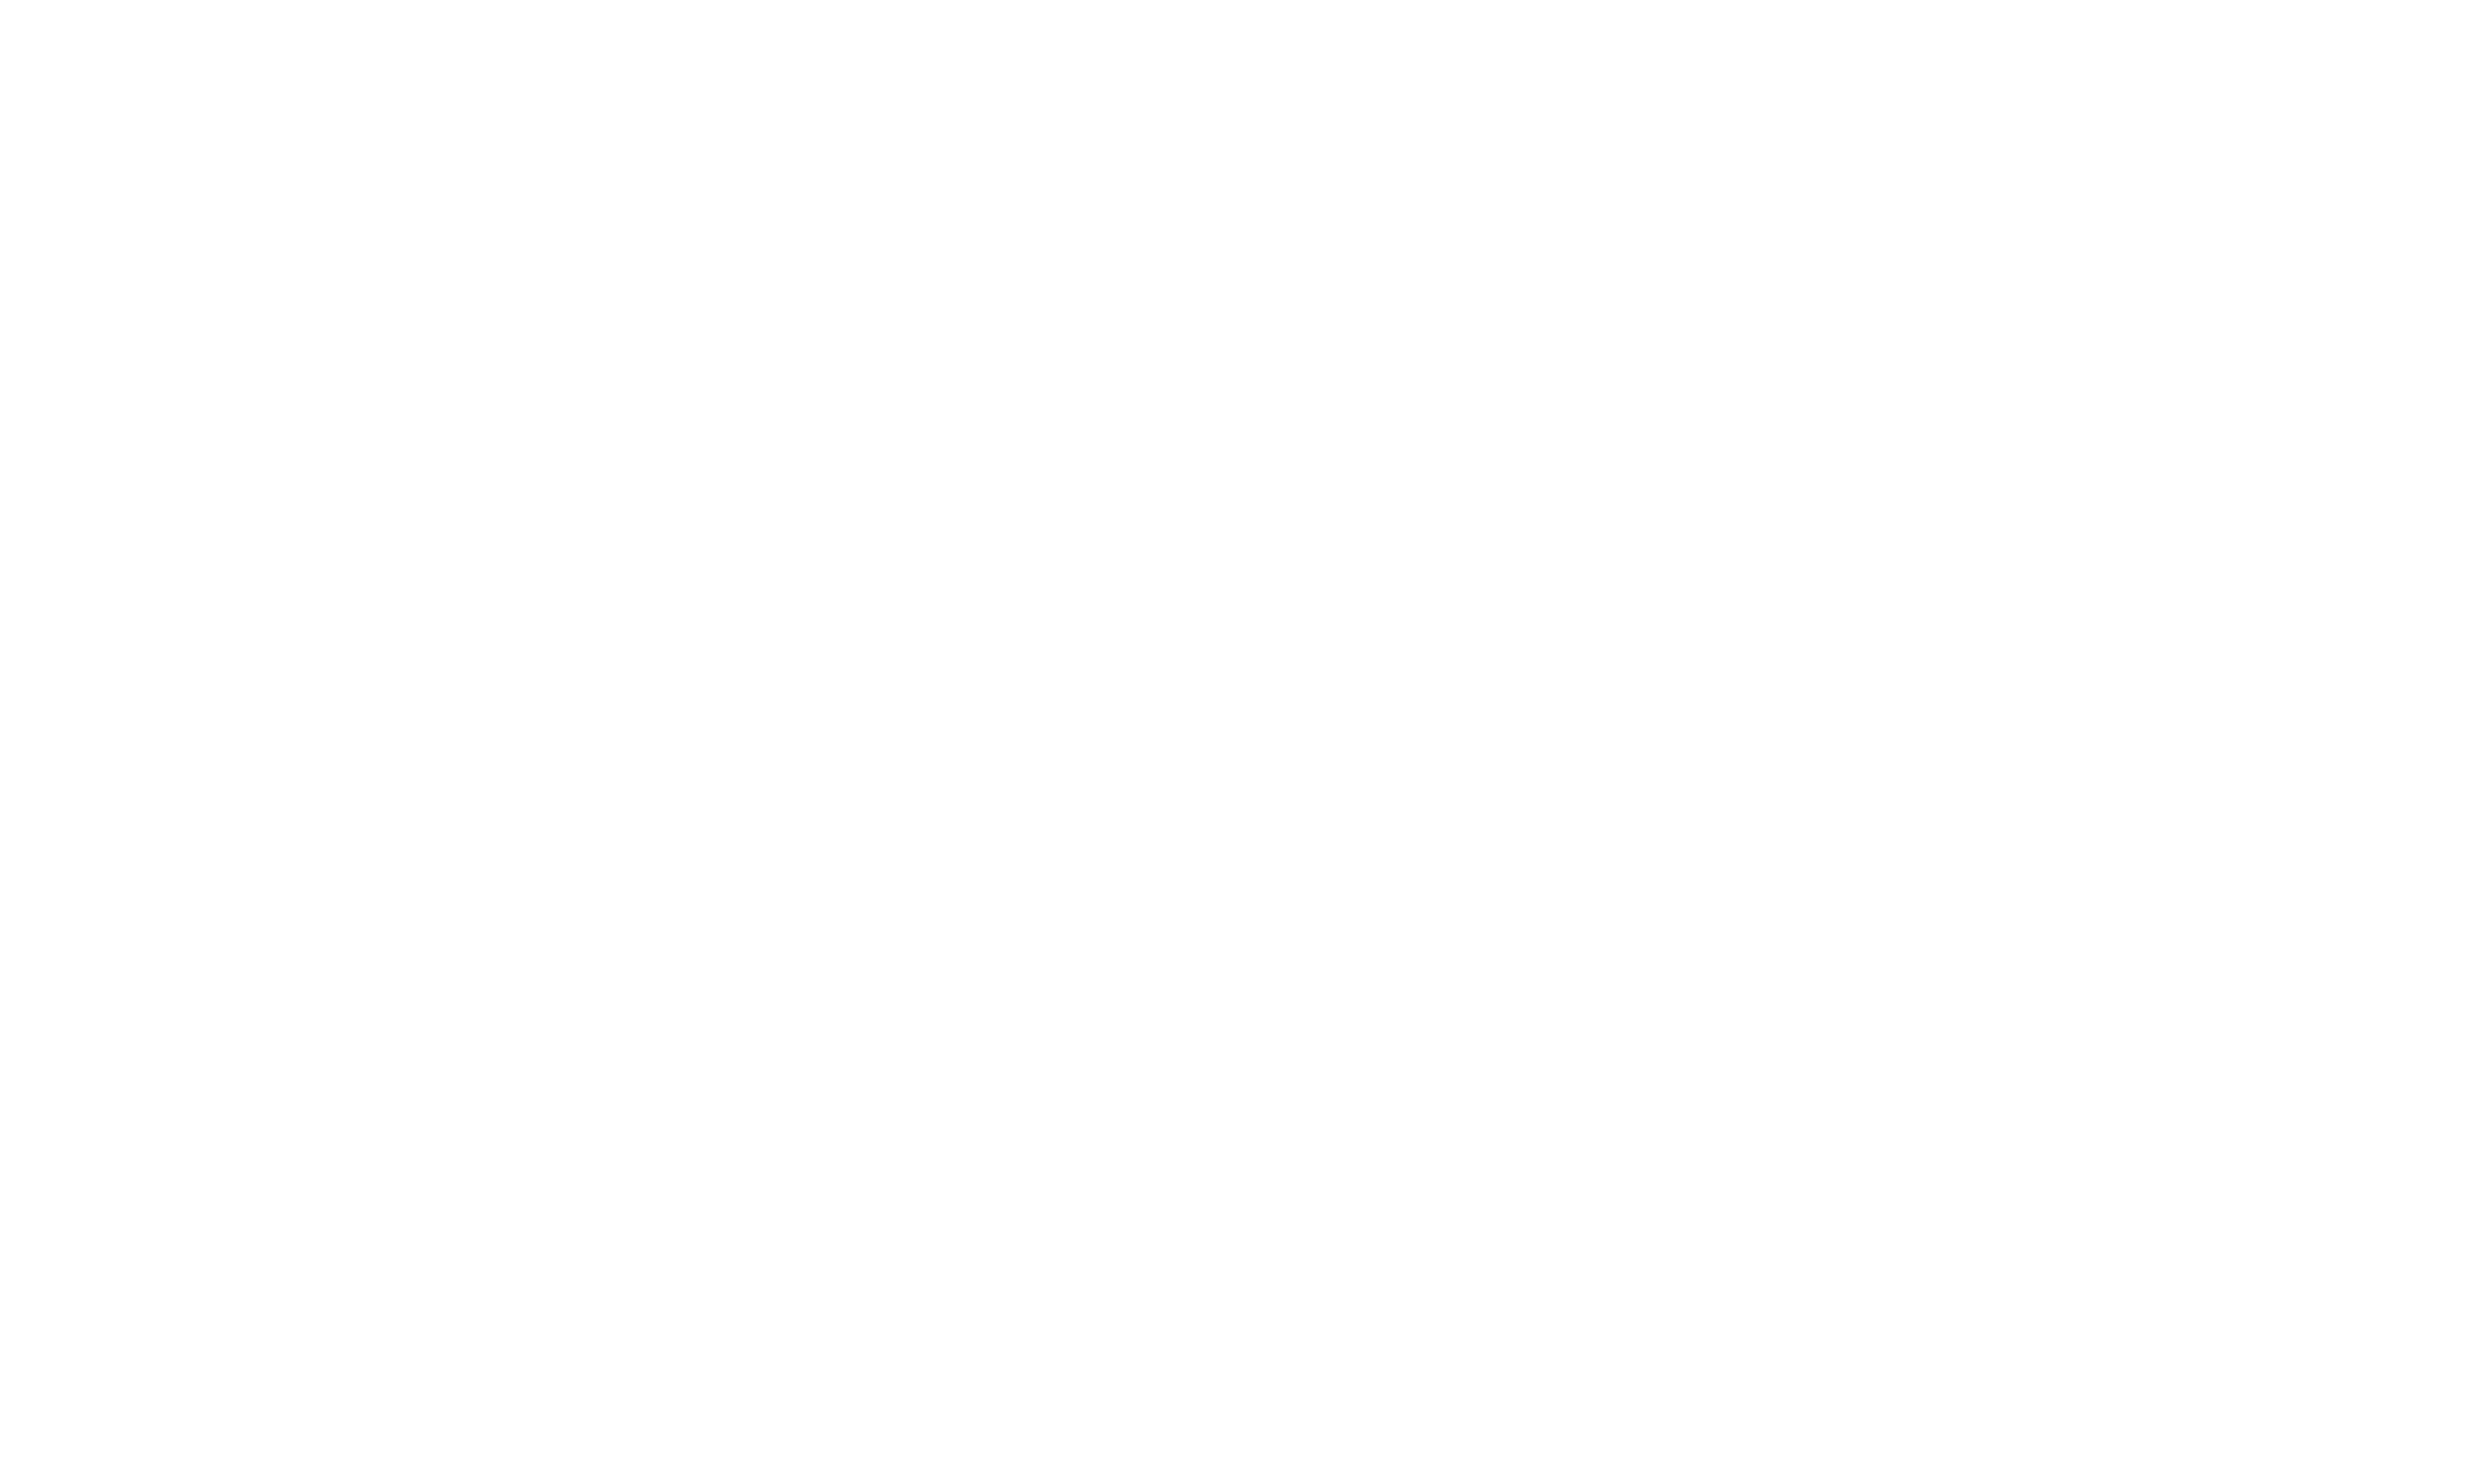 Bin2bil